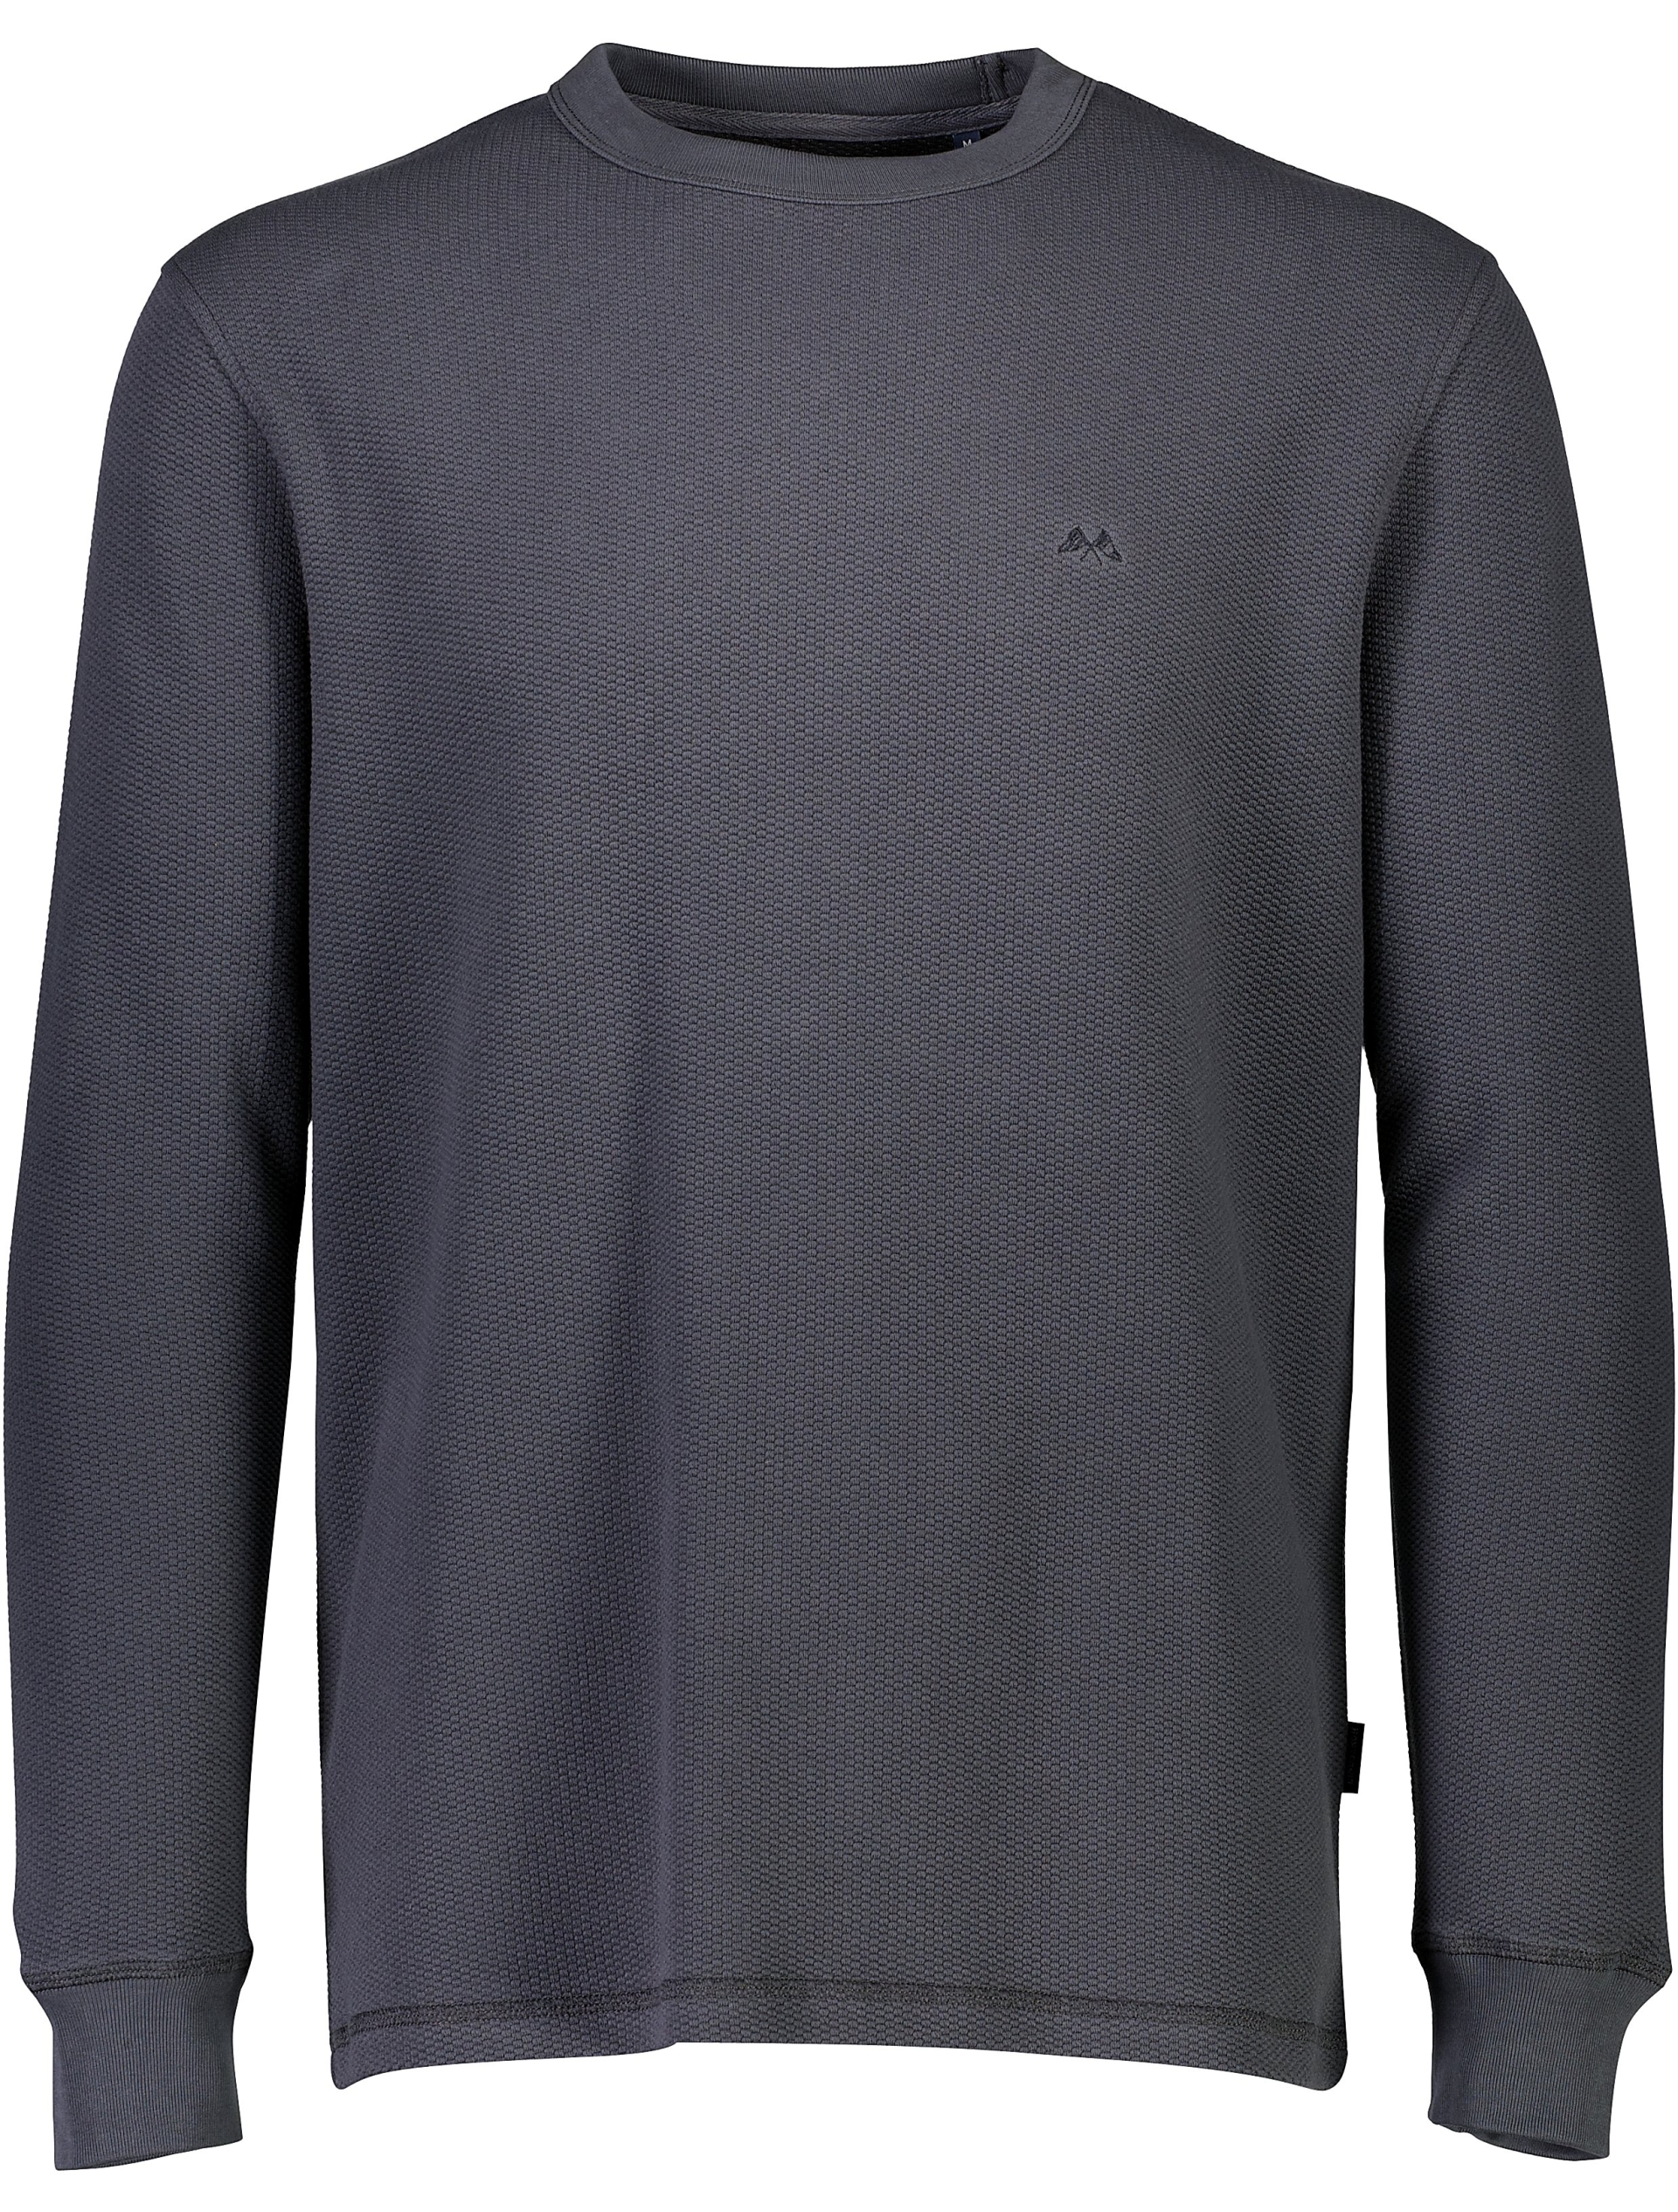 Lindbergh Sweatshirt grey / charcoal